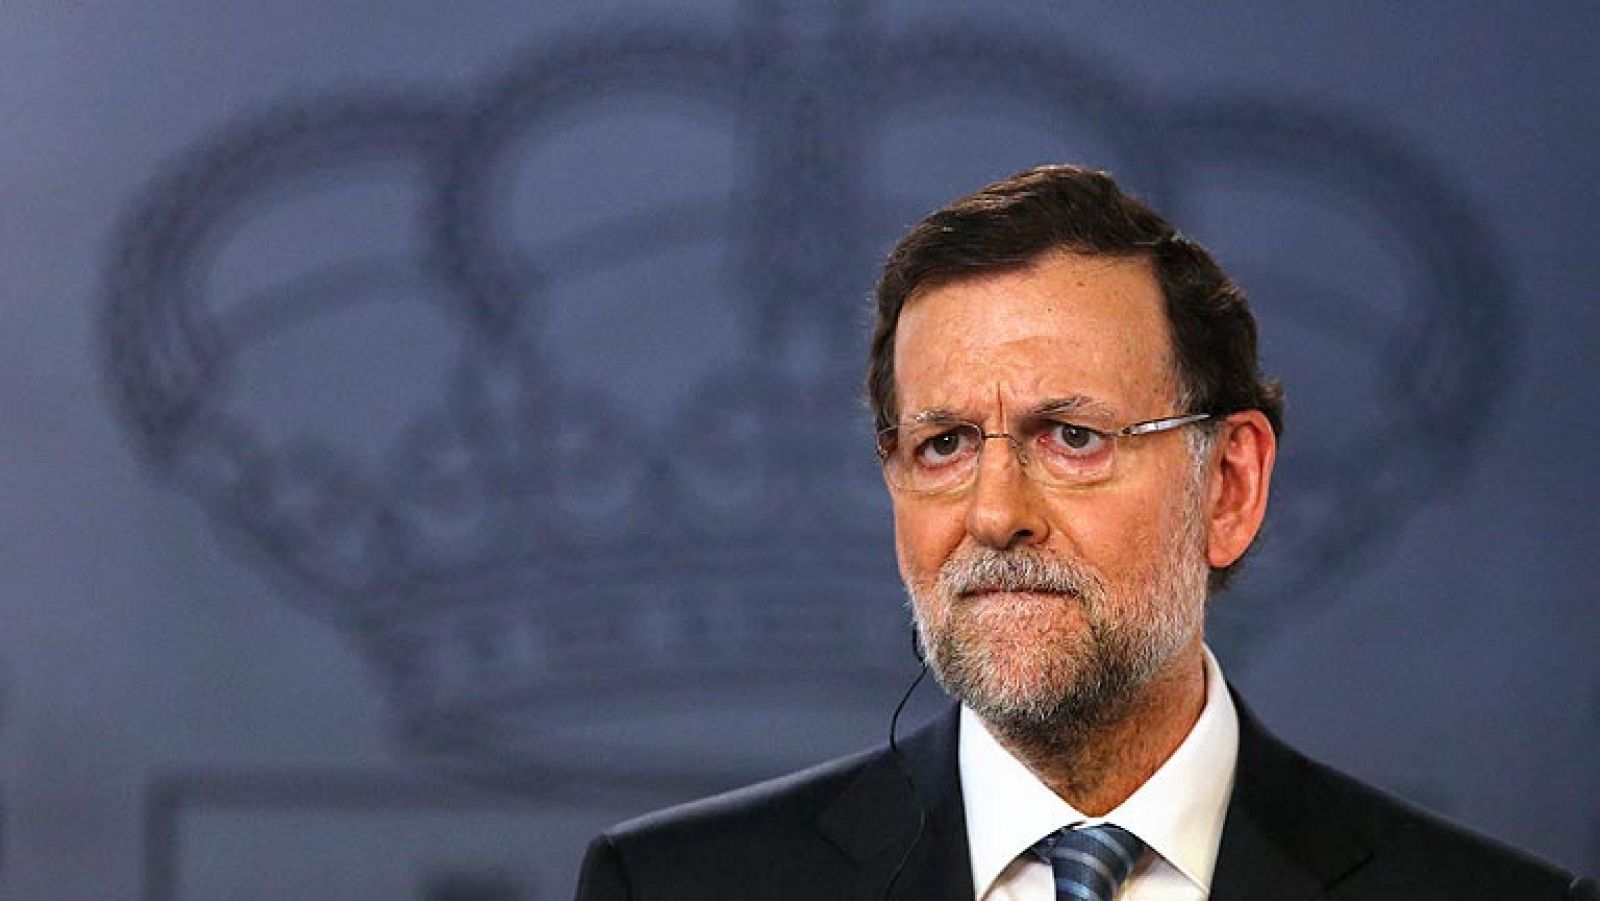 Noticias 24h: Rajoy explicará su "versión" del caso Bárcenas el 1 de agosto ante el pleno del Congreso | RTVE Play